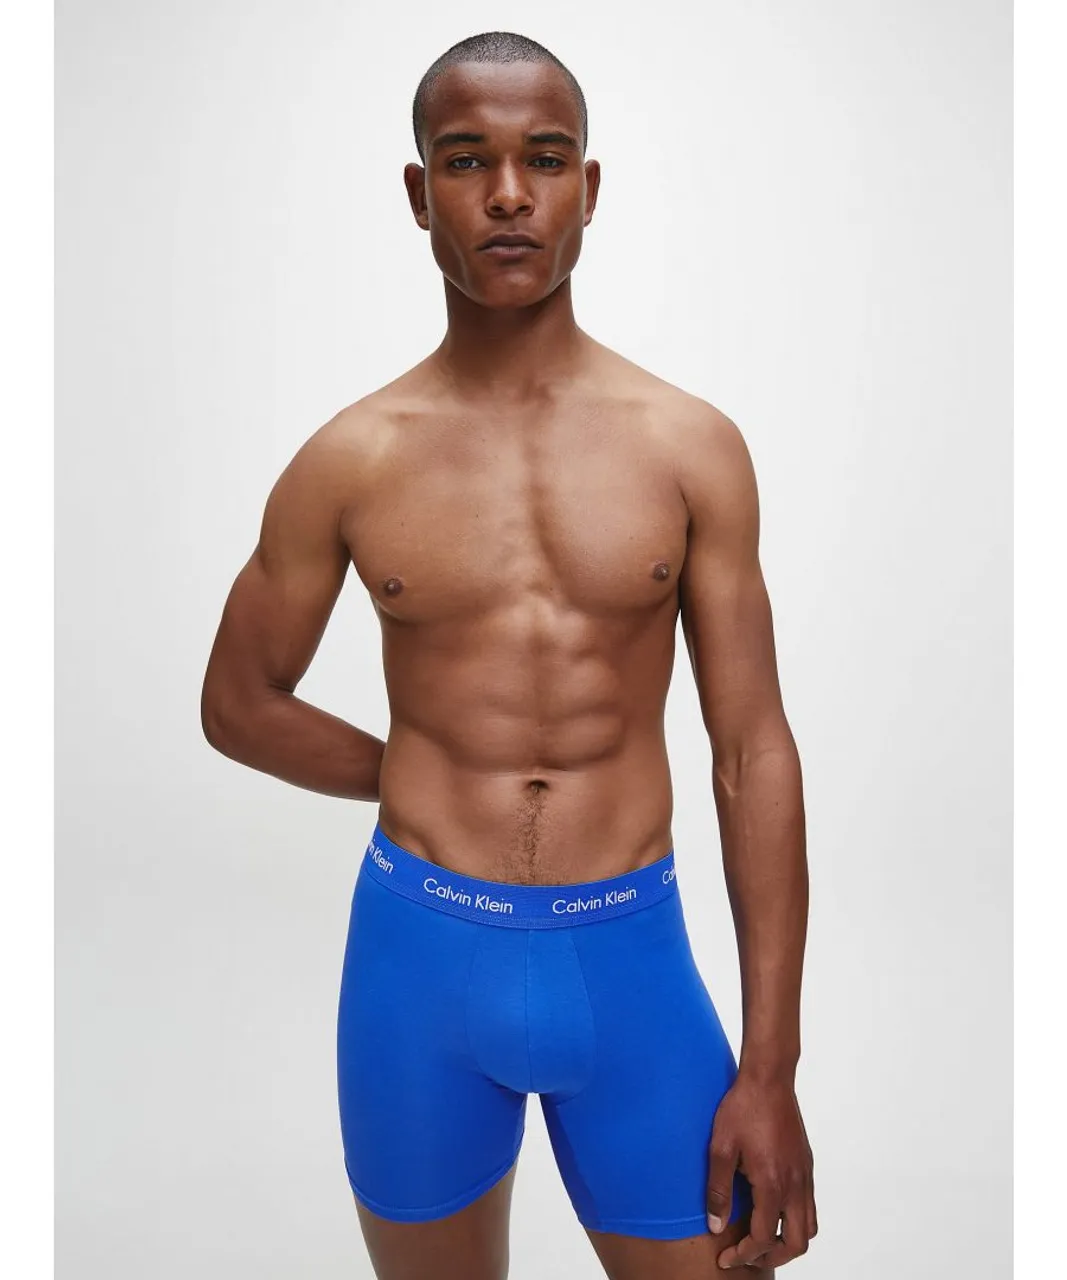 Calvin Klein Mens 3 Pack Boxer Briefs - Mid Rise - Cotton Stretch, Black/Blue - Multicolour